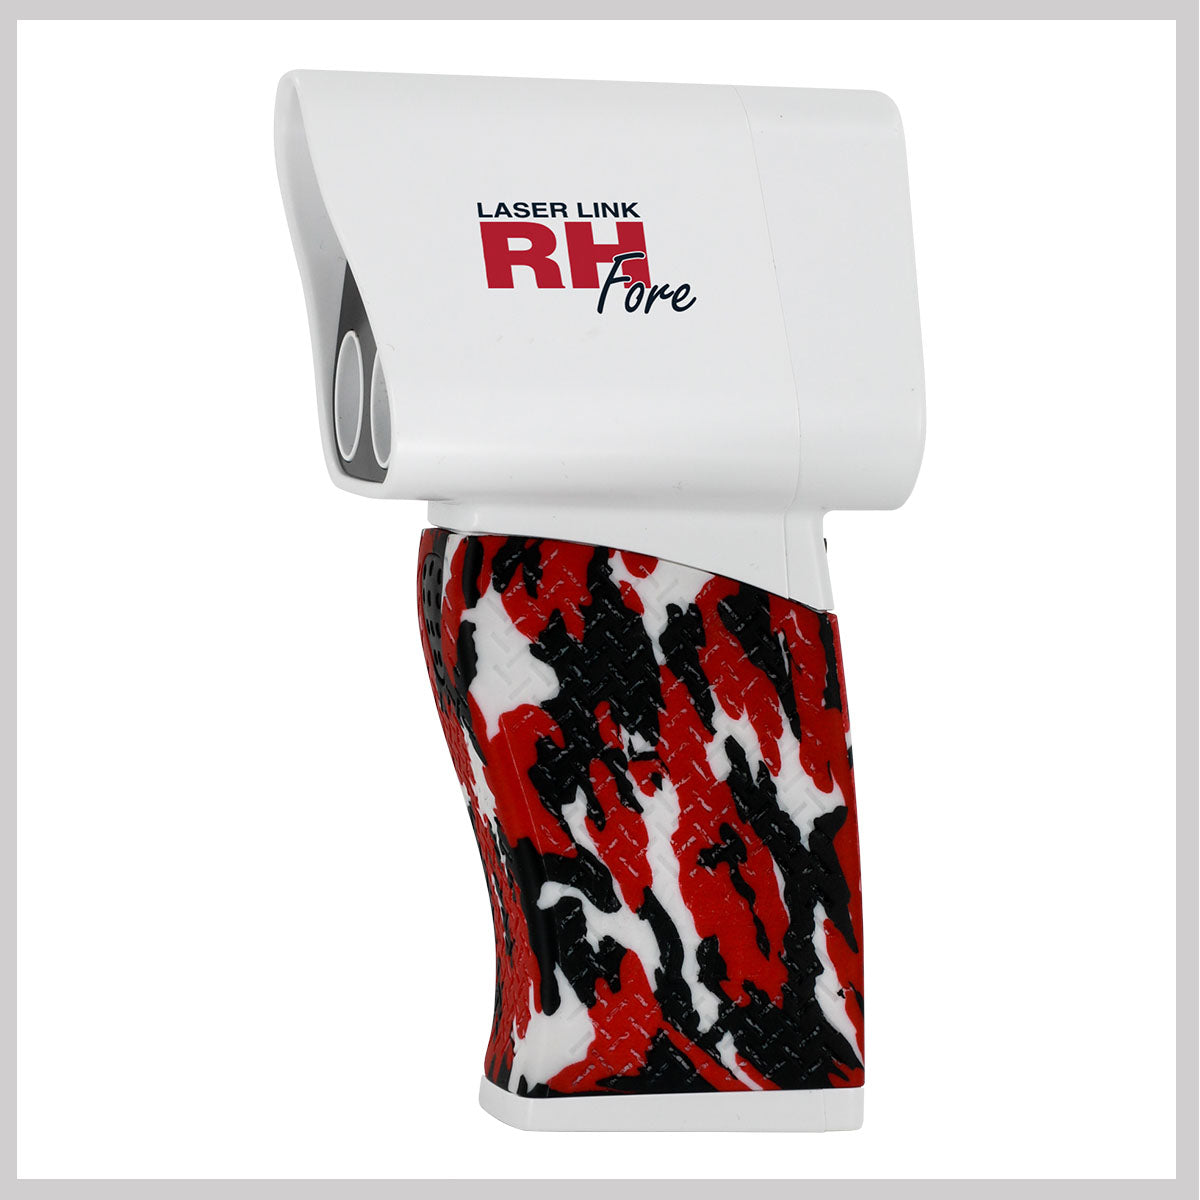 Rangefinder: RH Fore